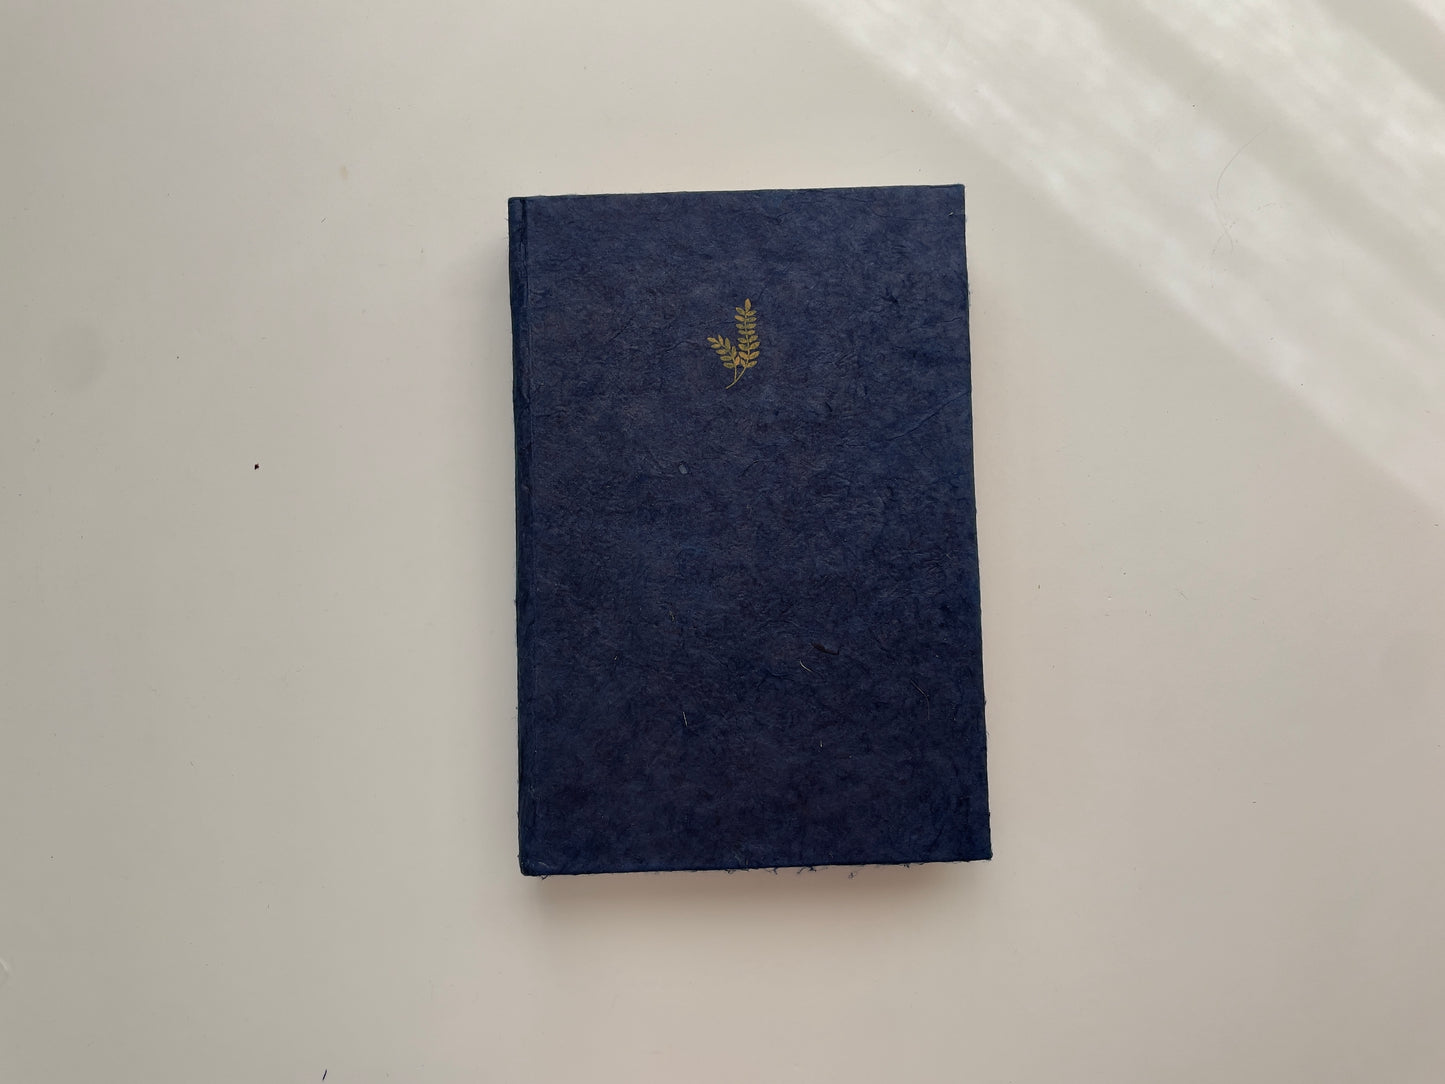 SECONDS (Colour) - Indigo Blue Journal